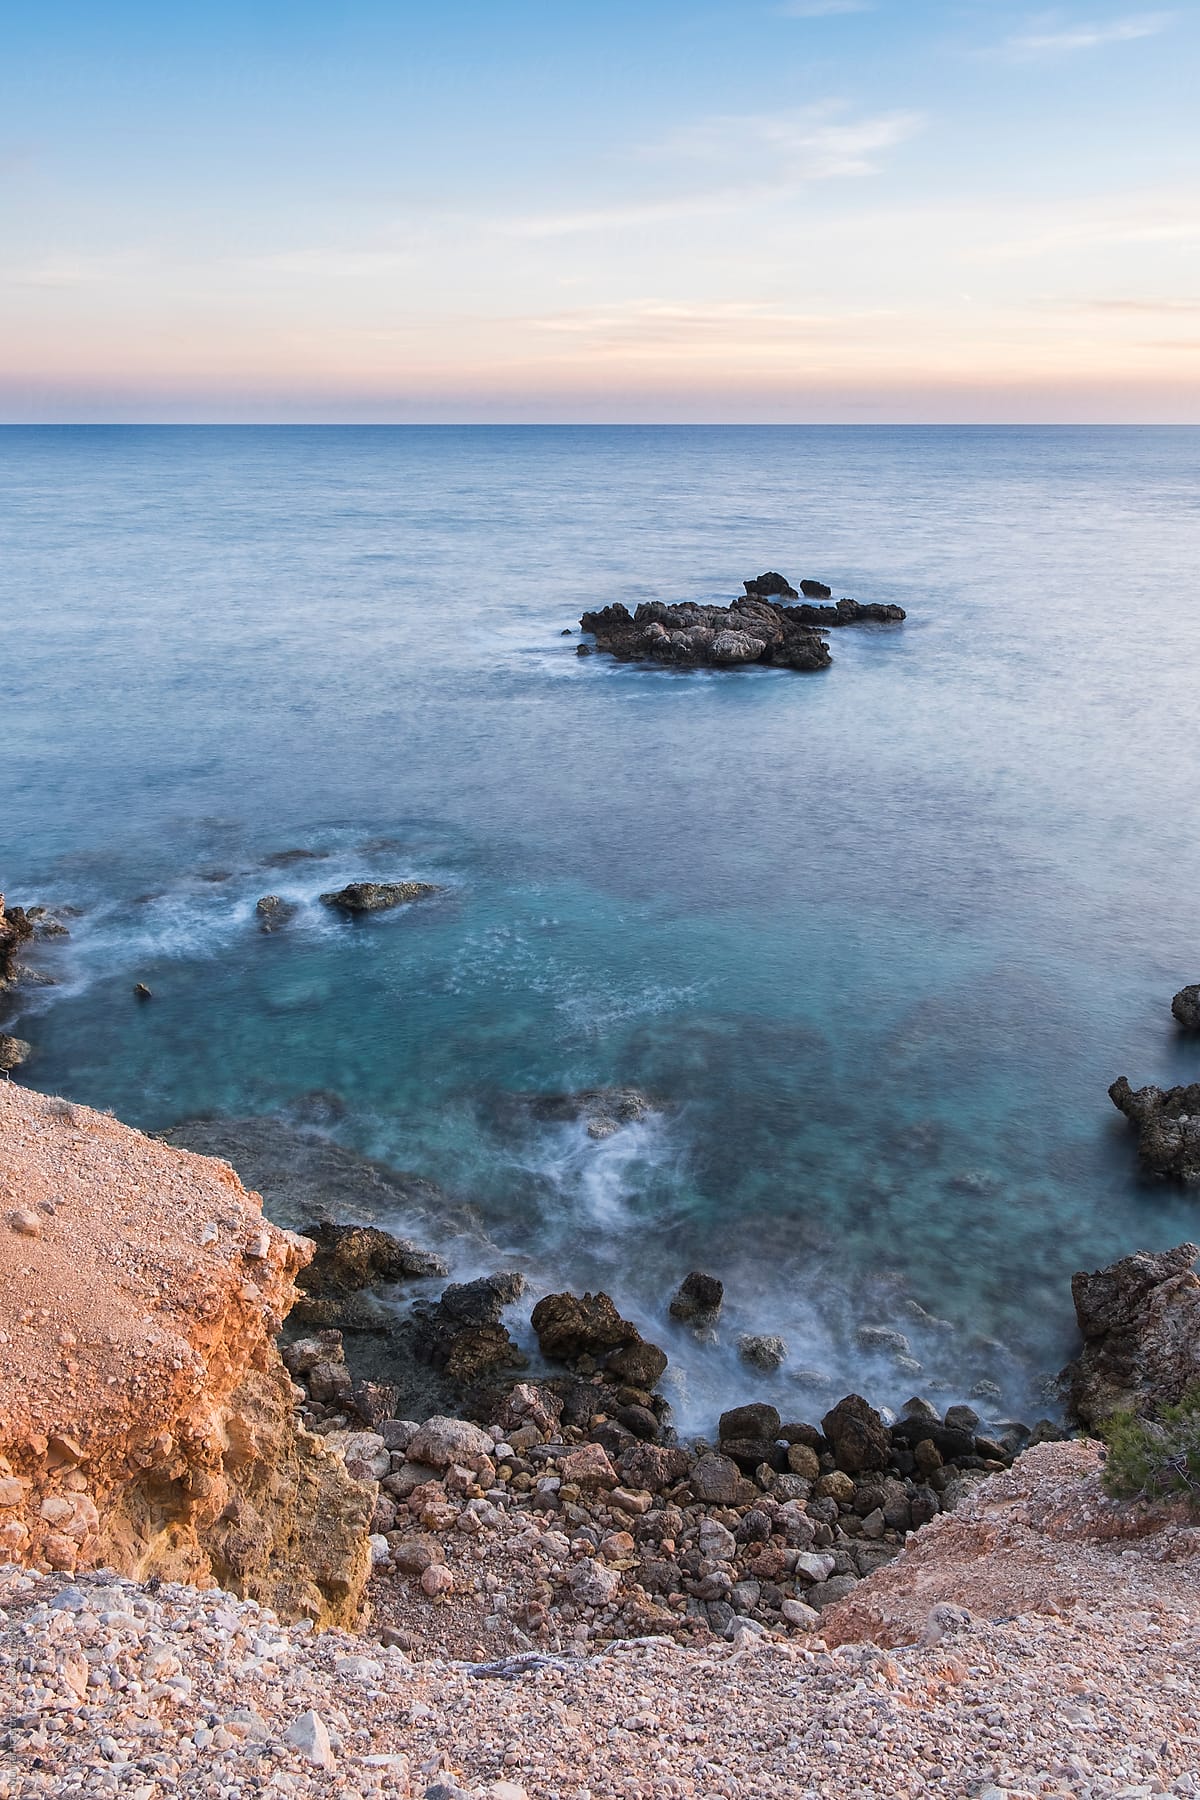 Beautiful Landscape On The Mediterranean Sea by Stocksy